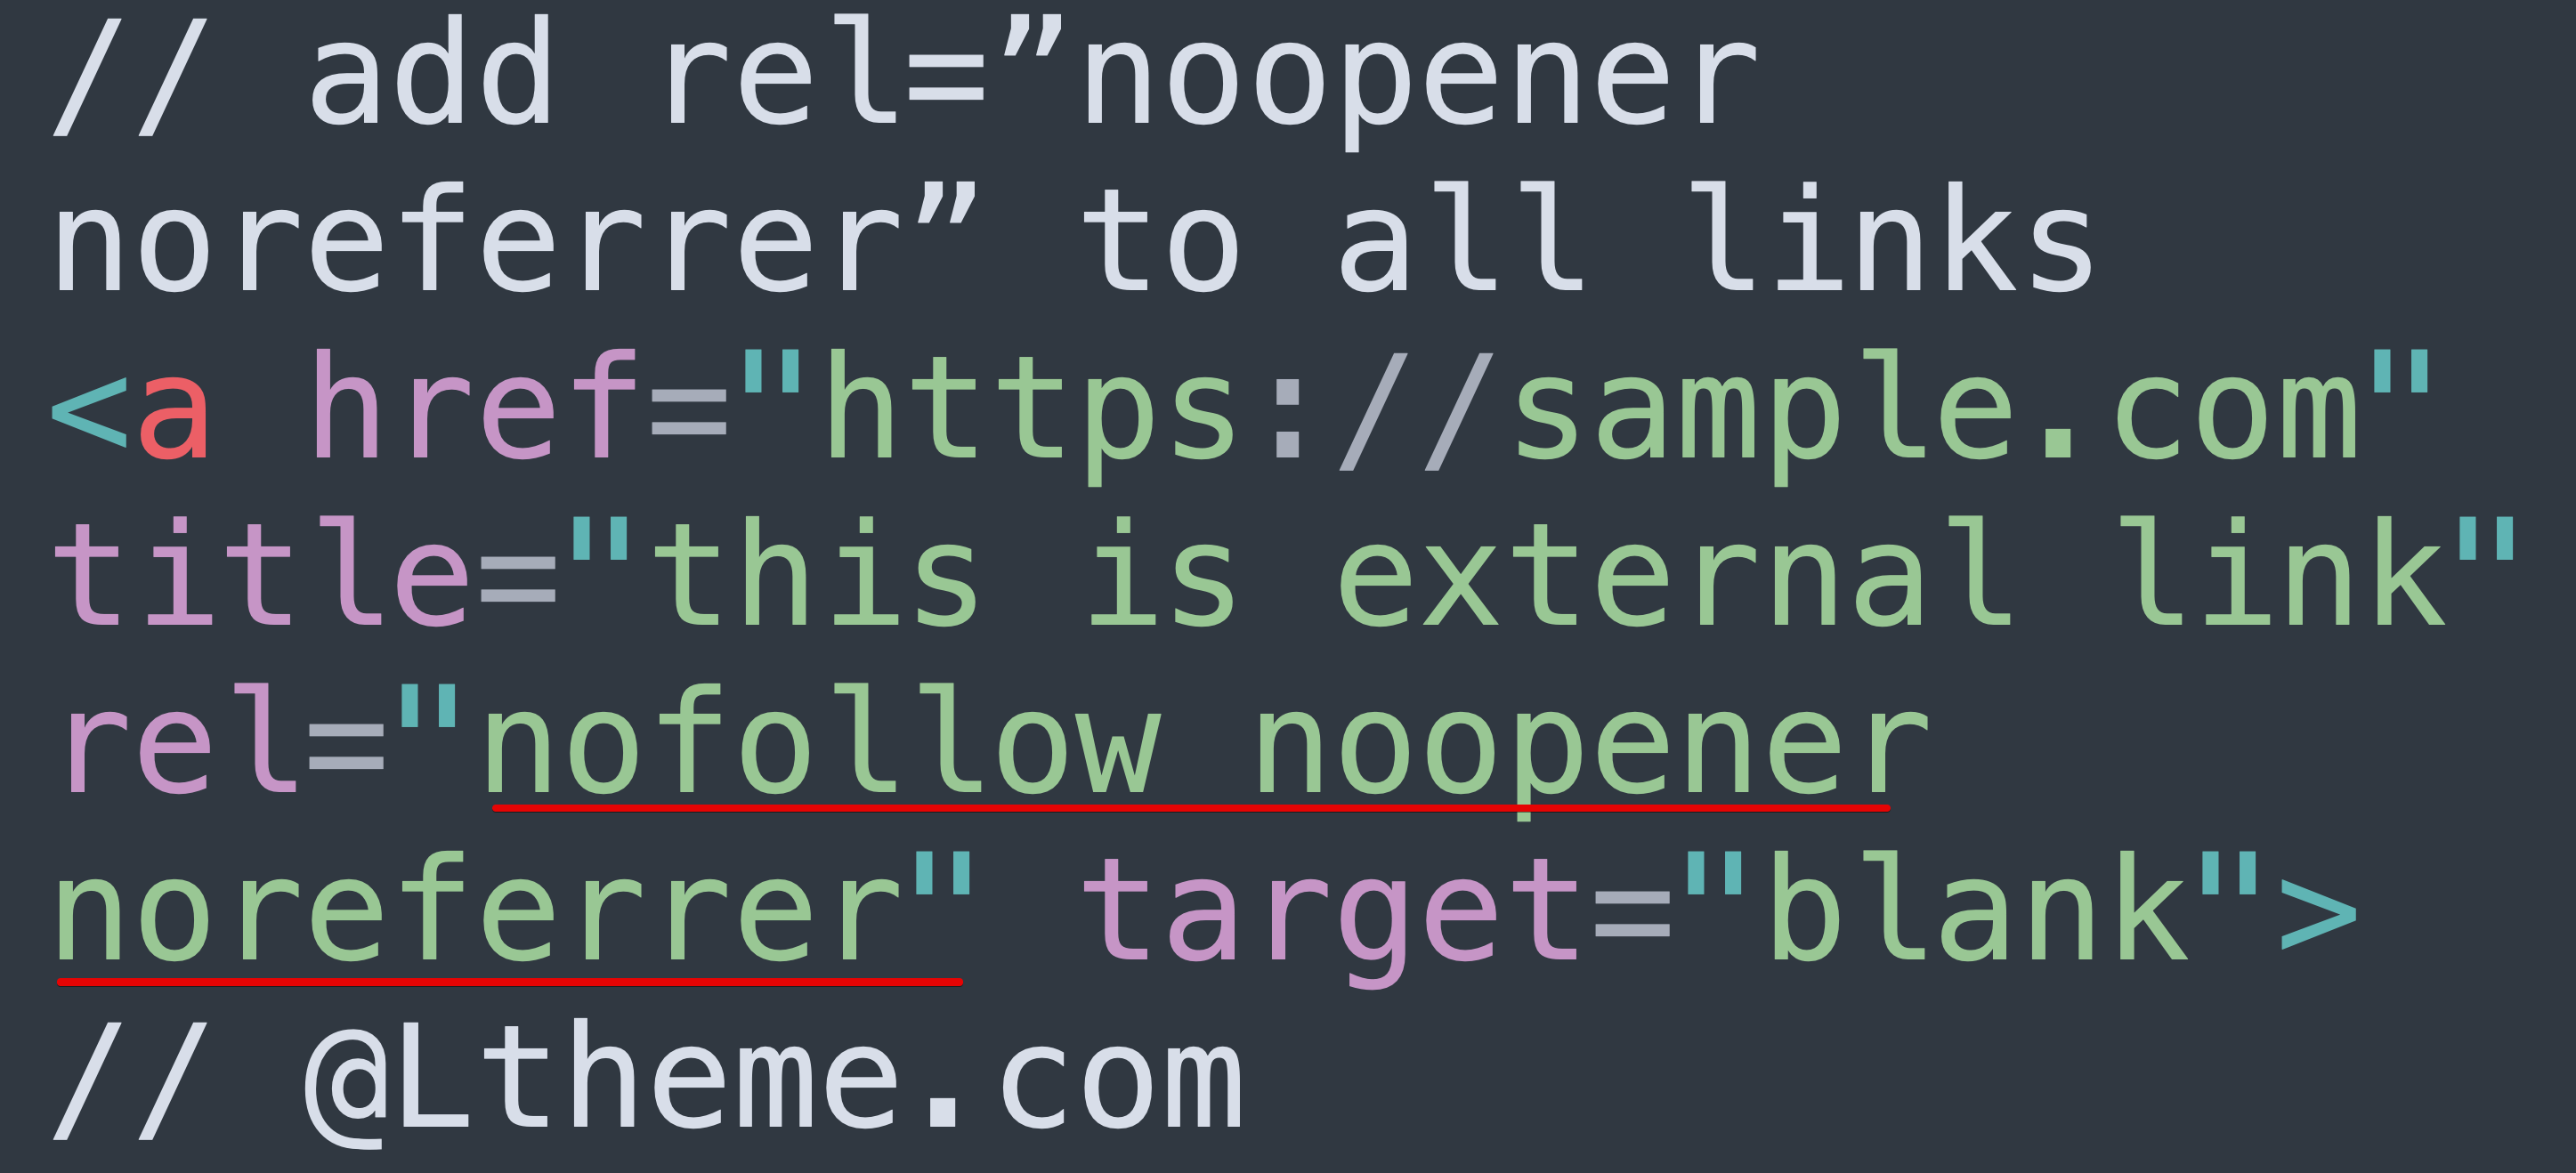 [Joomla] How to add rel="noopener noreferrer" to all external links